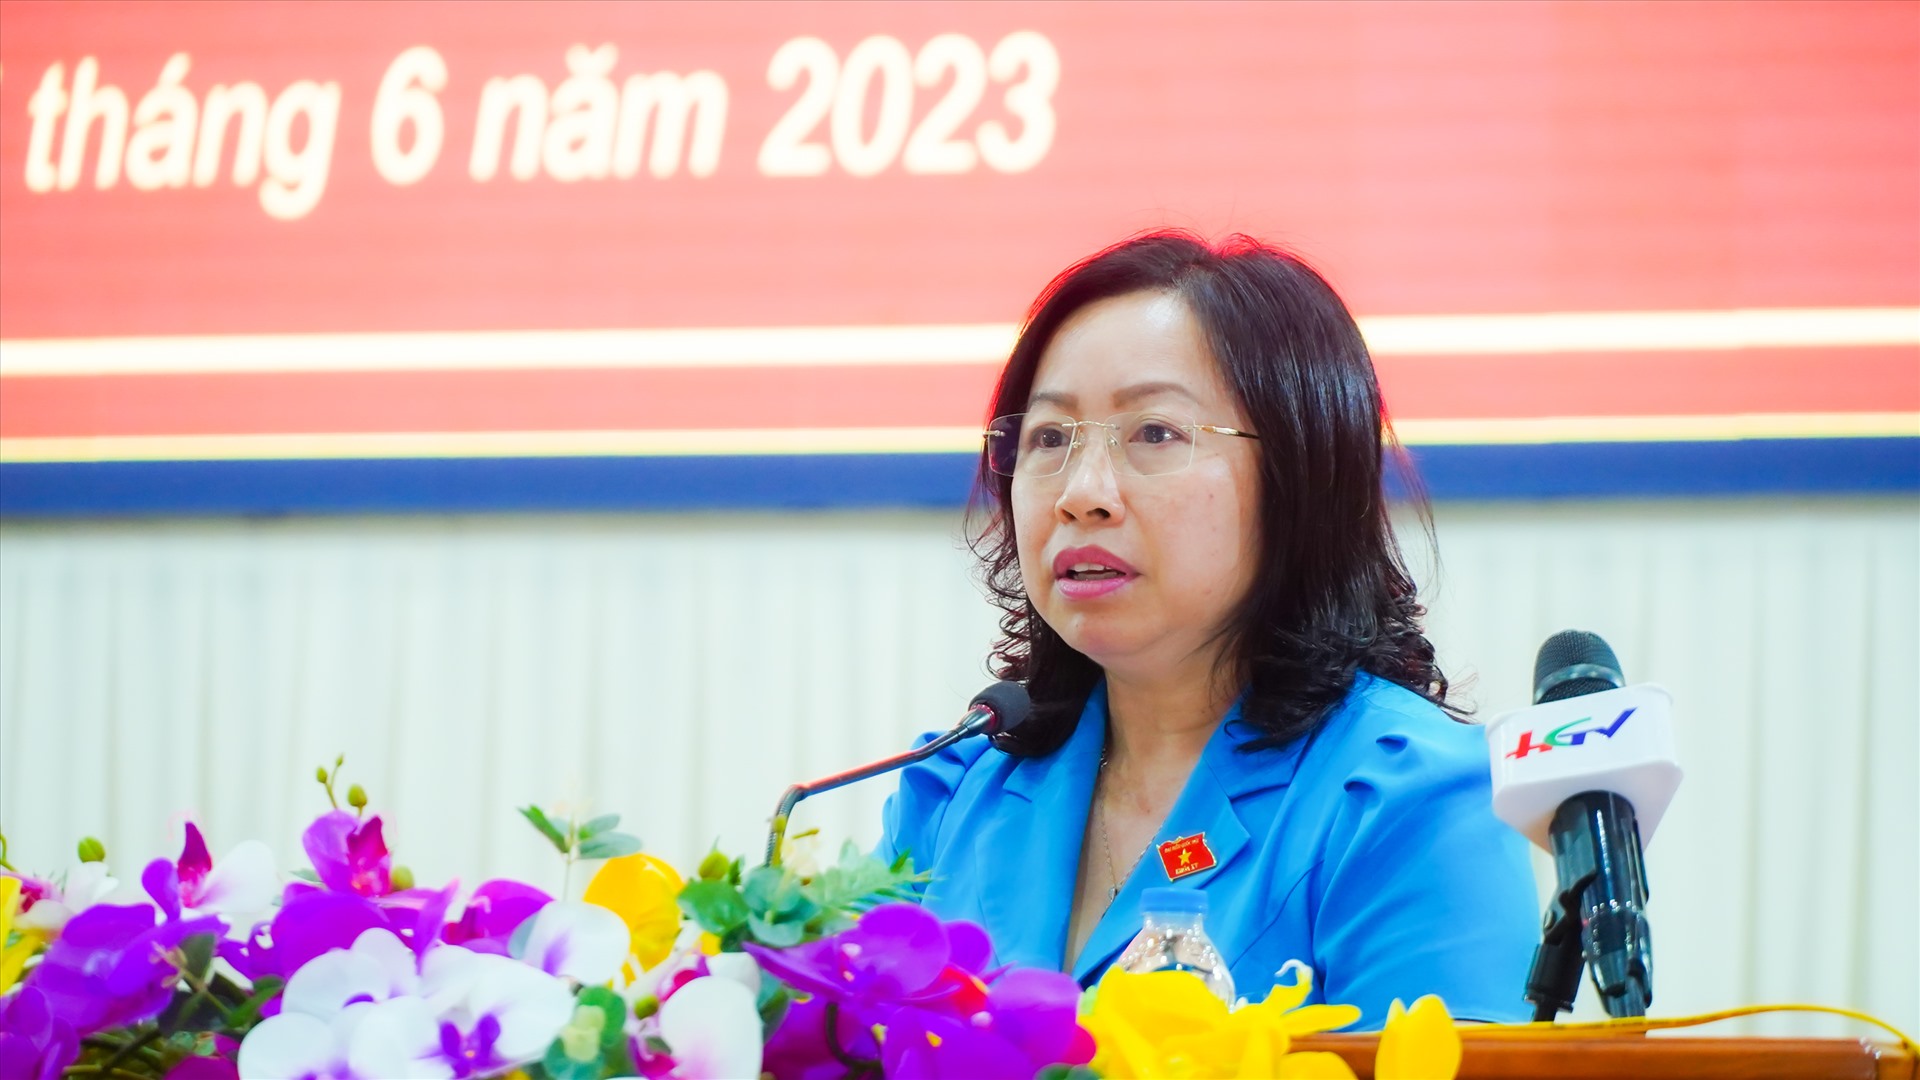 Phó Chủ tịch Tổng LĐLĐ Việt Nam Thái Thu Xương phát biểu tại buổi tiếp xúc. Ảnh: Tạ Quang